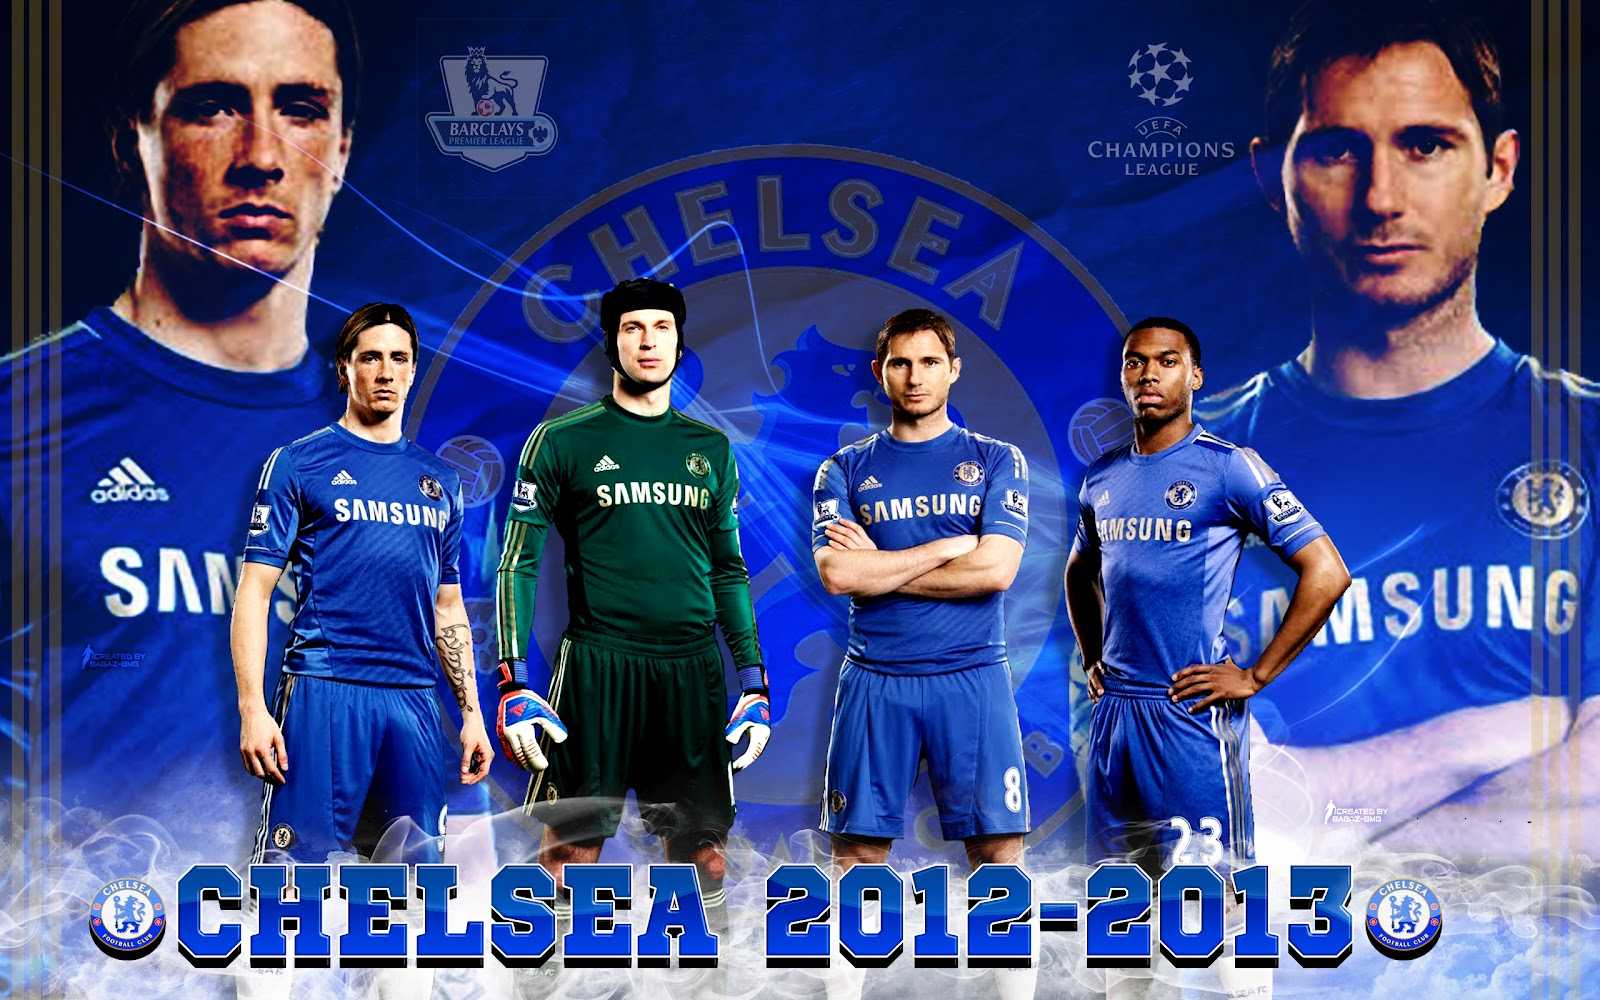 The Blues Gambar Gambar Chelsea Fc